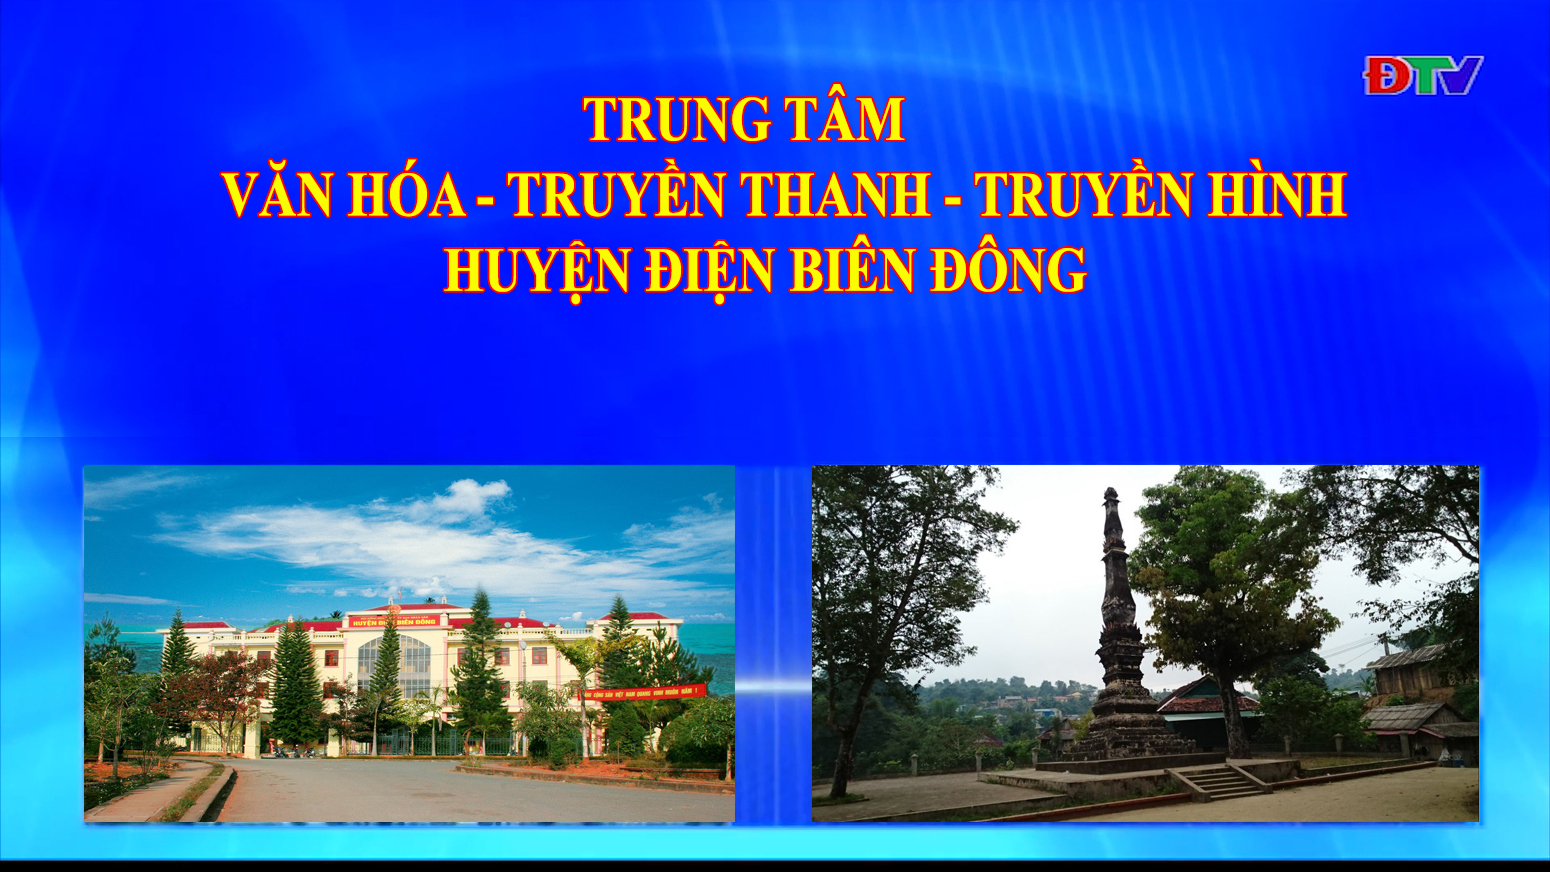 Trung tâm VH-TTTH huyện Điện Biên Đông (Ngày 27-11-2021)